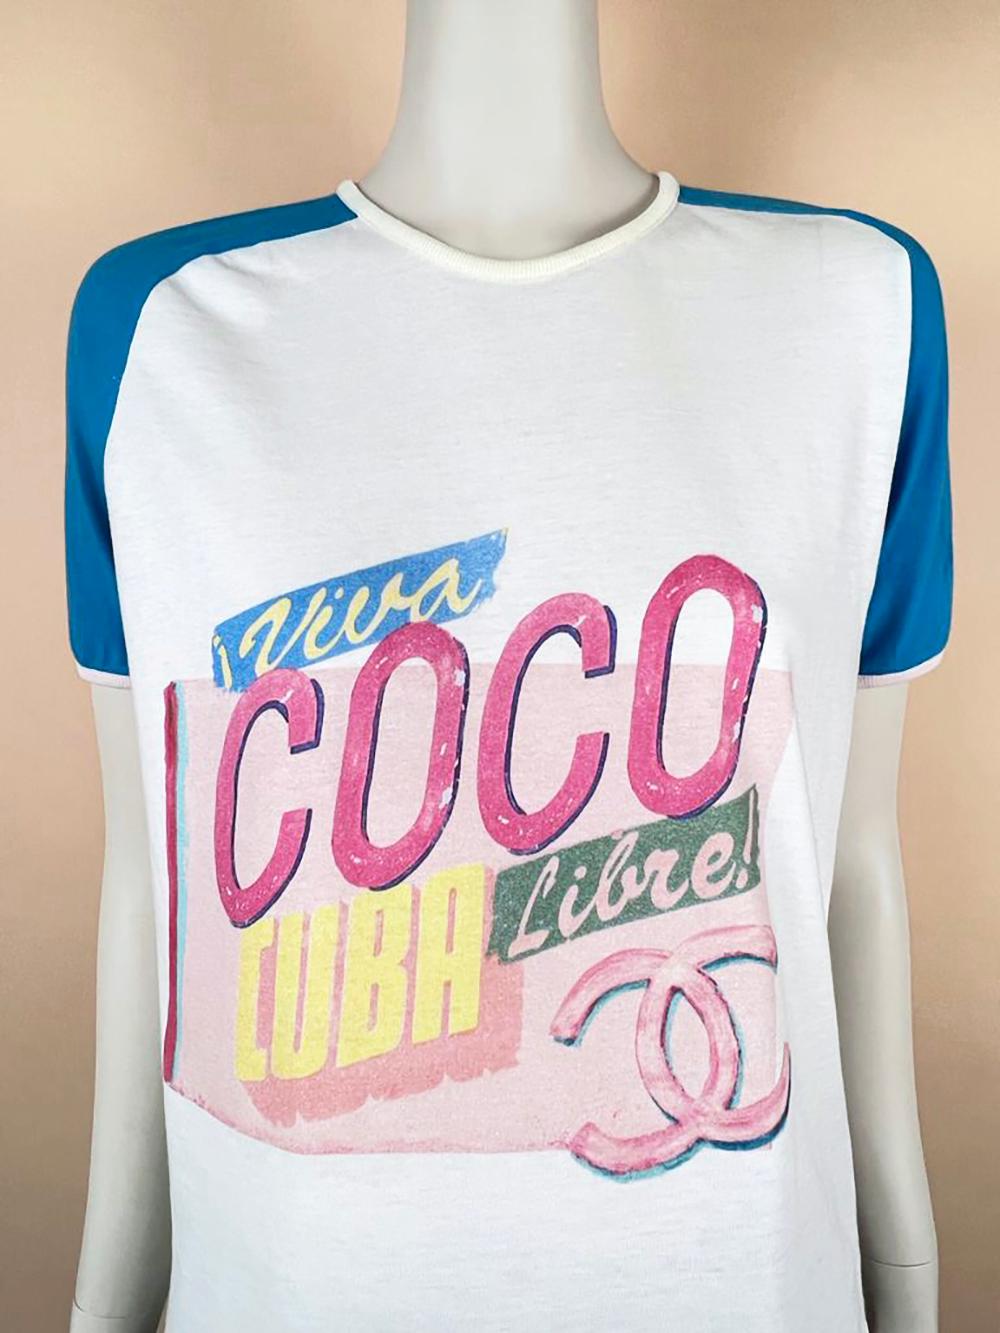 Chanel Coco Cuba Libre CC T-Shirt 1